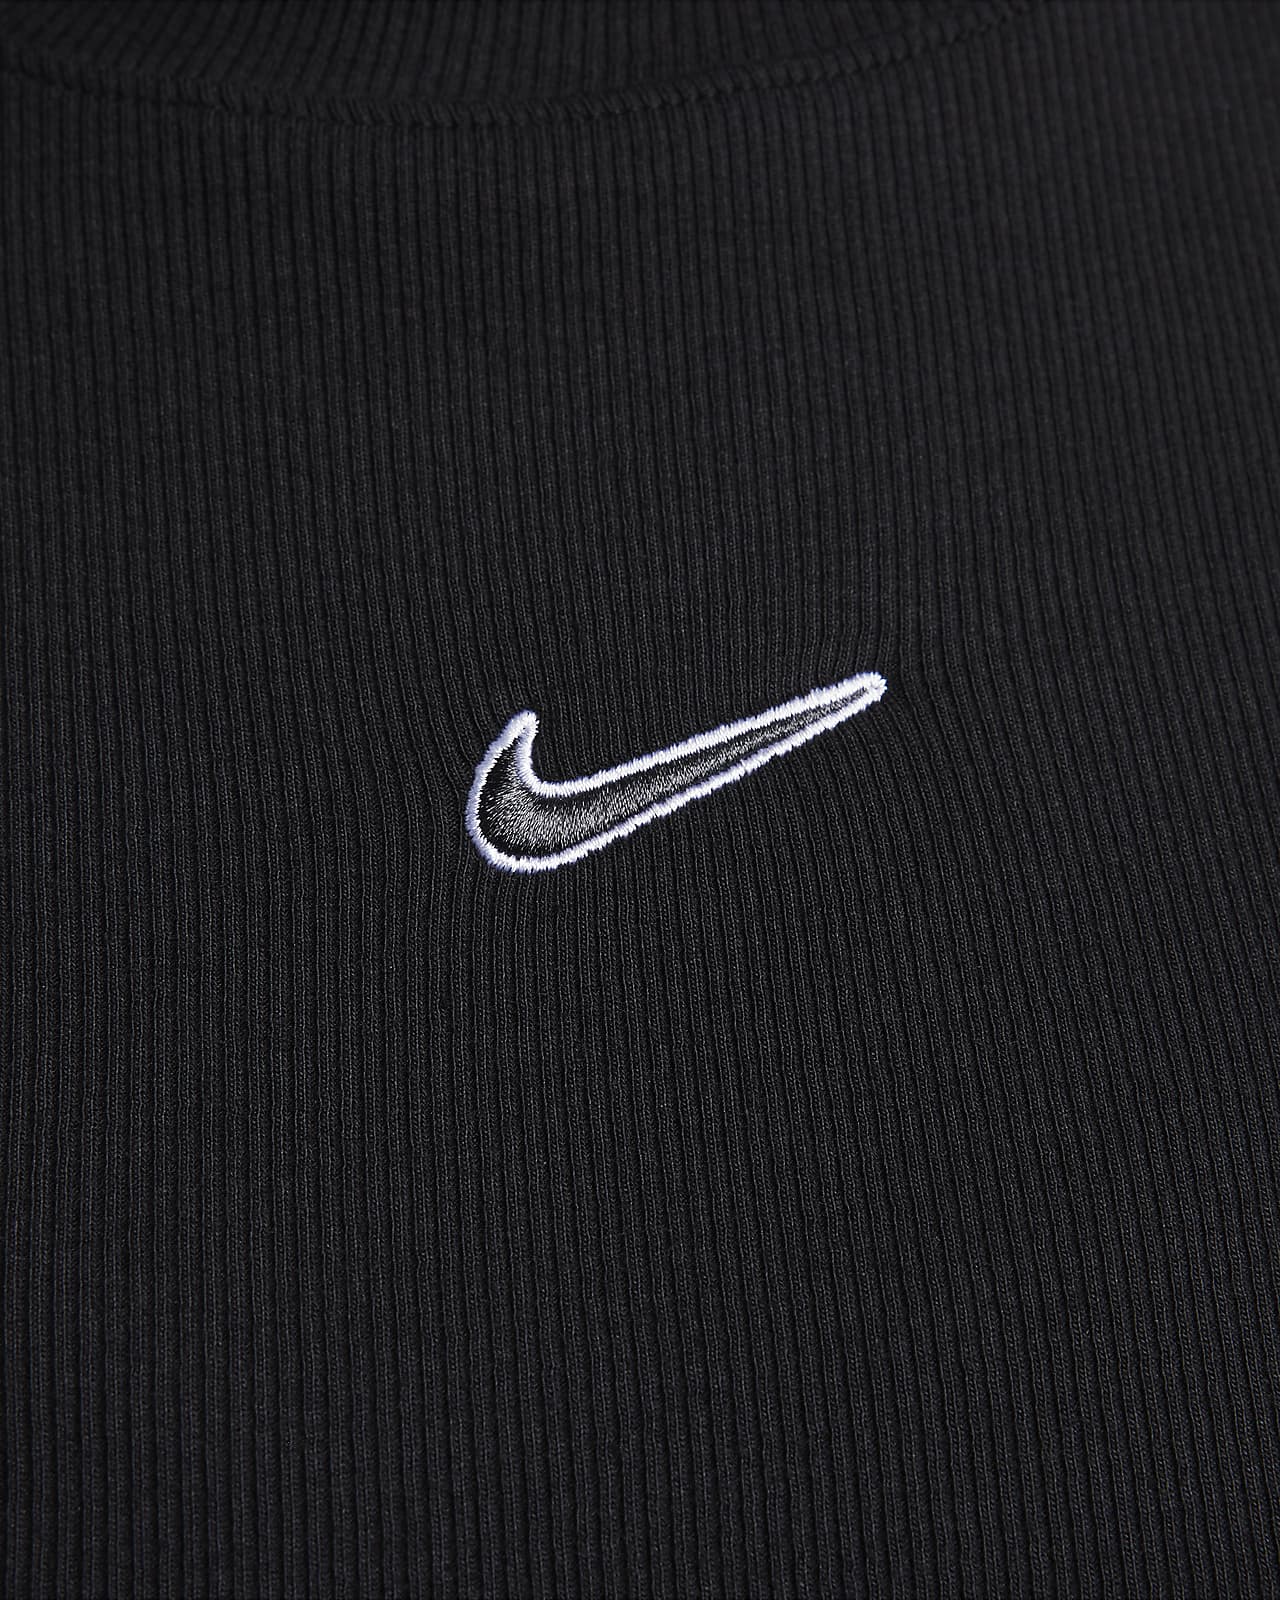 Nike Sportswear Women's Long-Sleeve Top. Nike CA